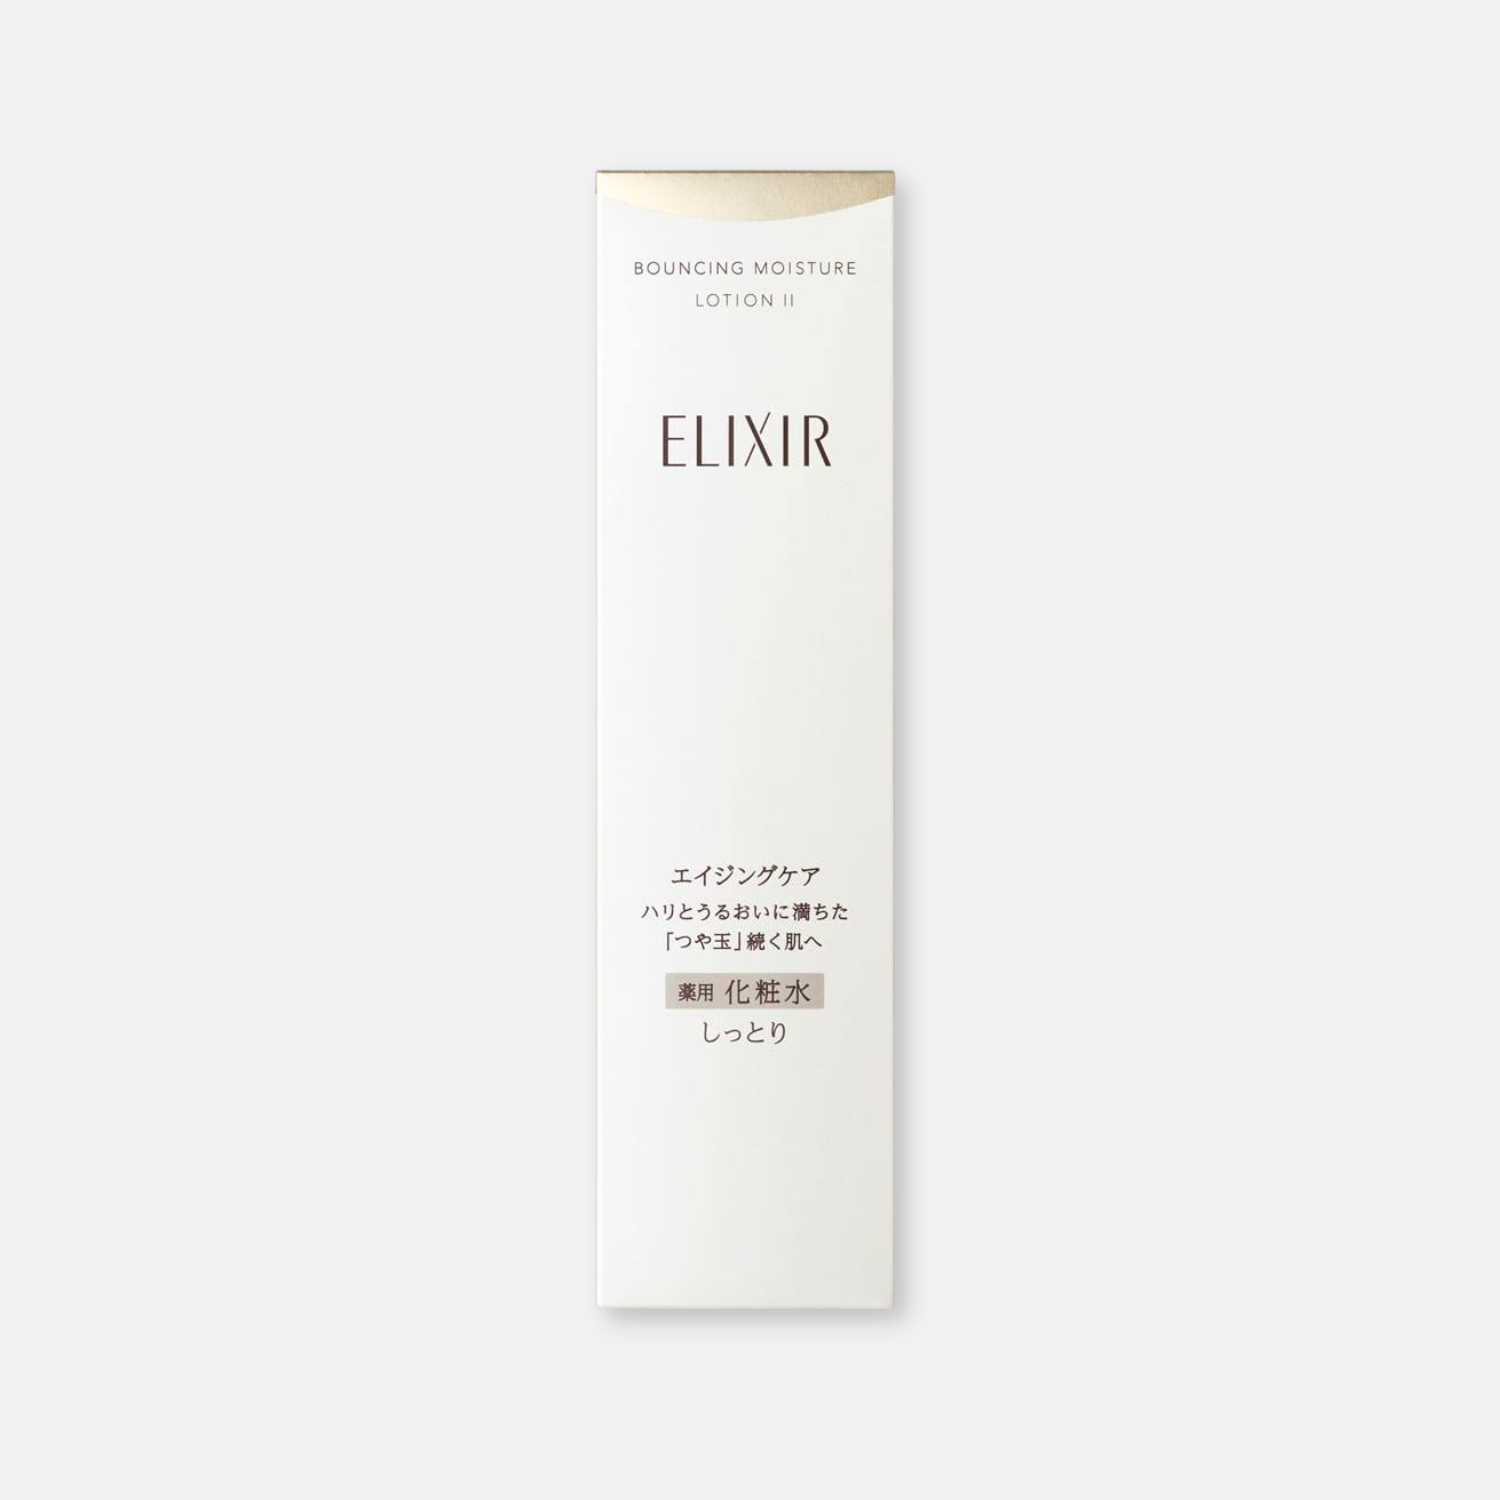 Shiseido Elixir Bouncing Moisture Lotion II 170ml - Buy Me Japan